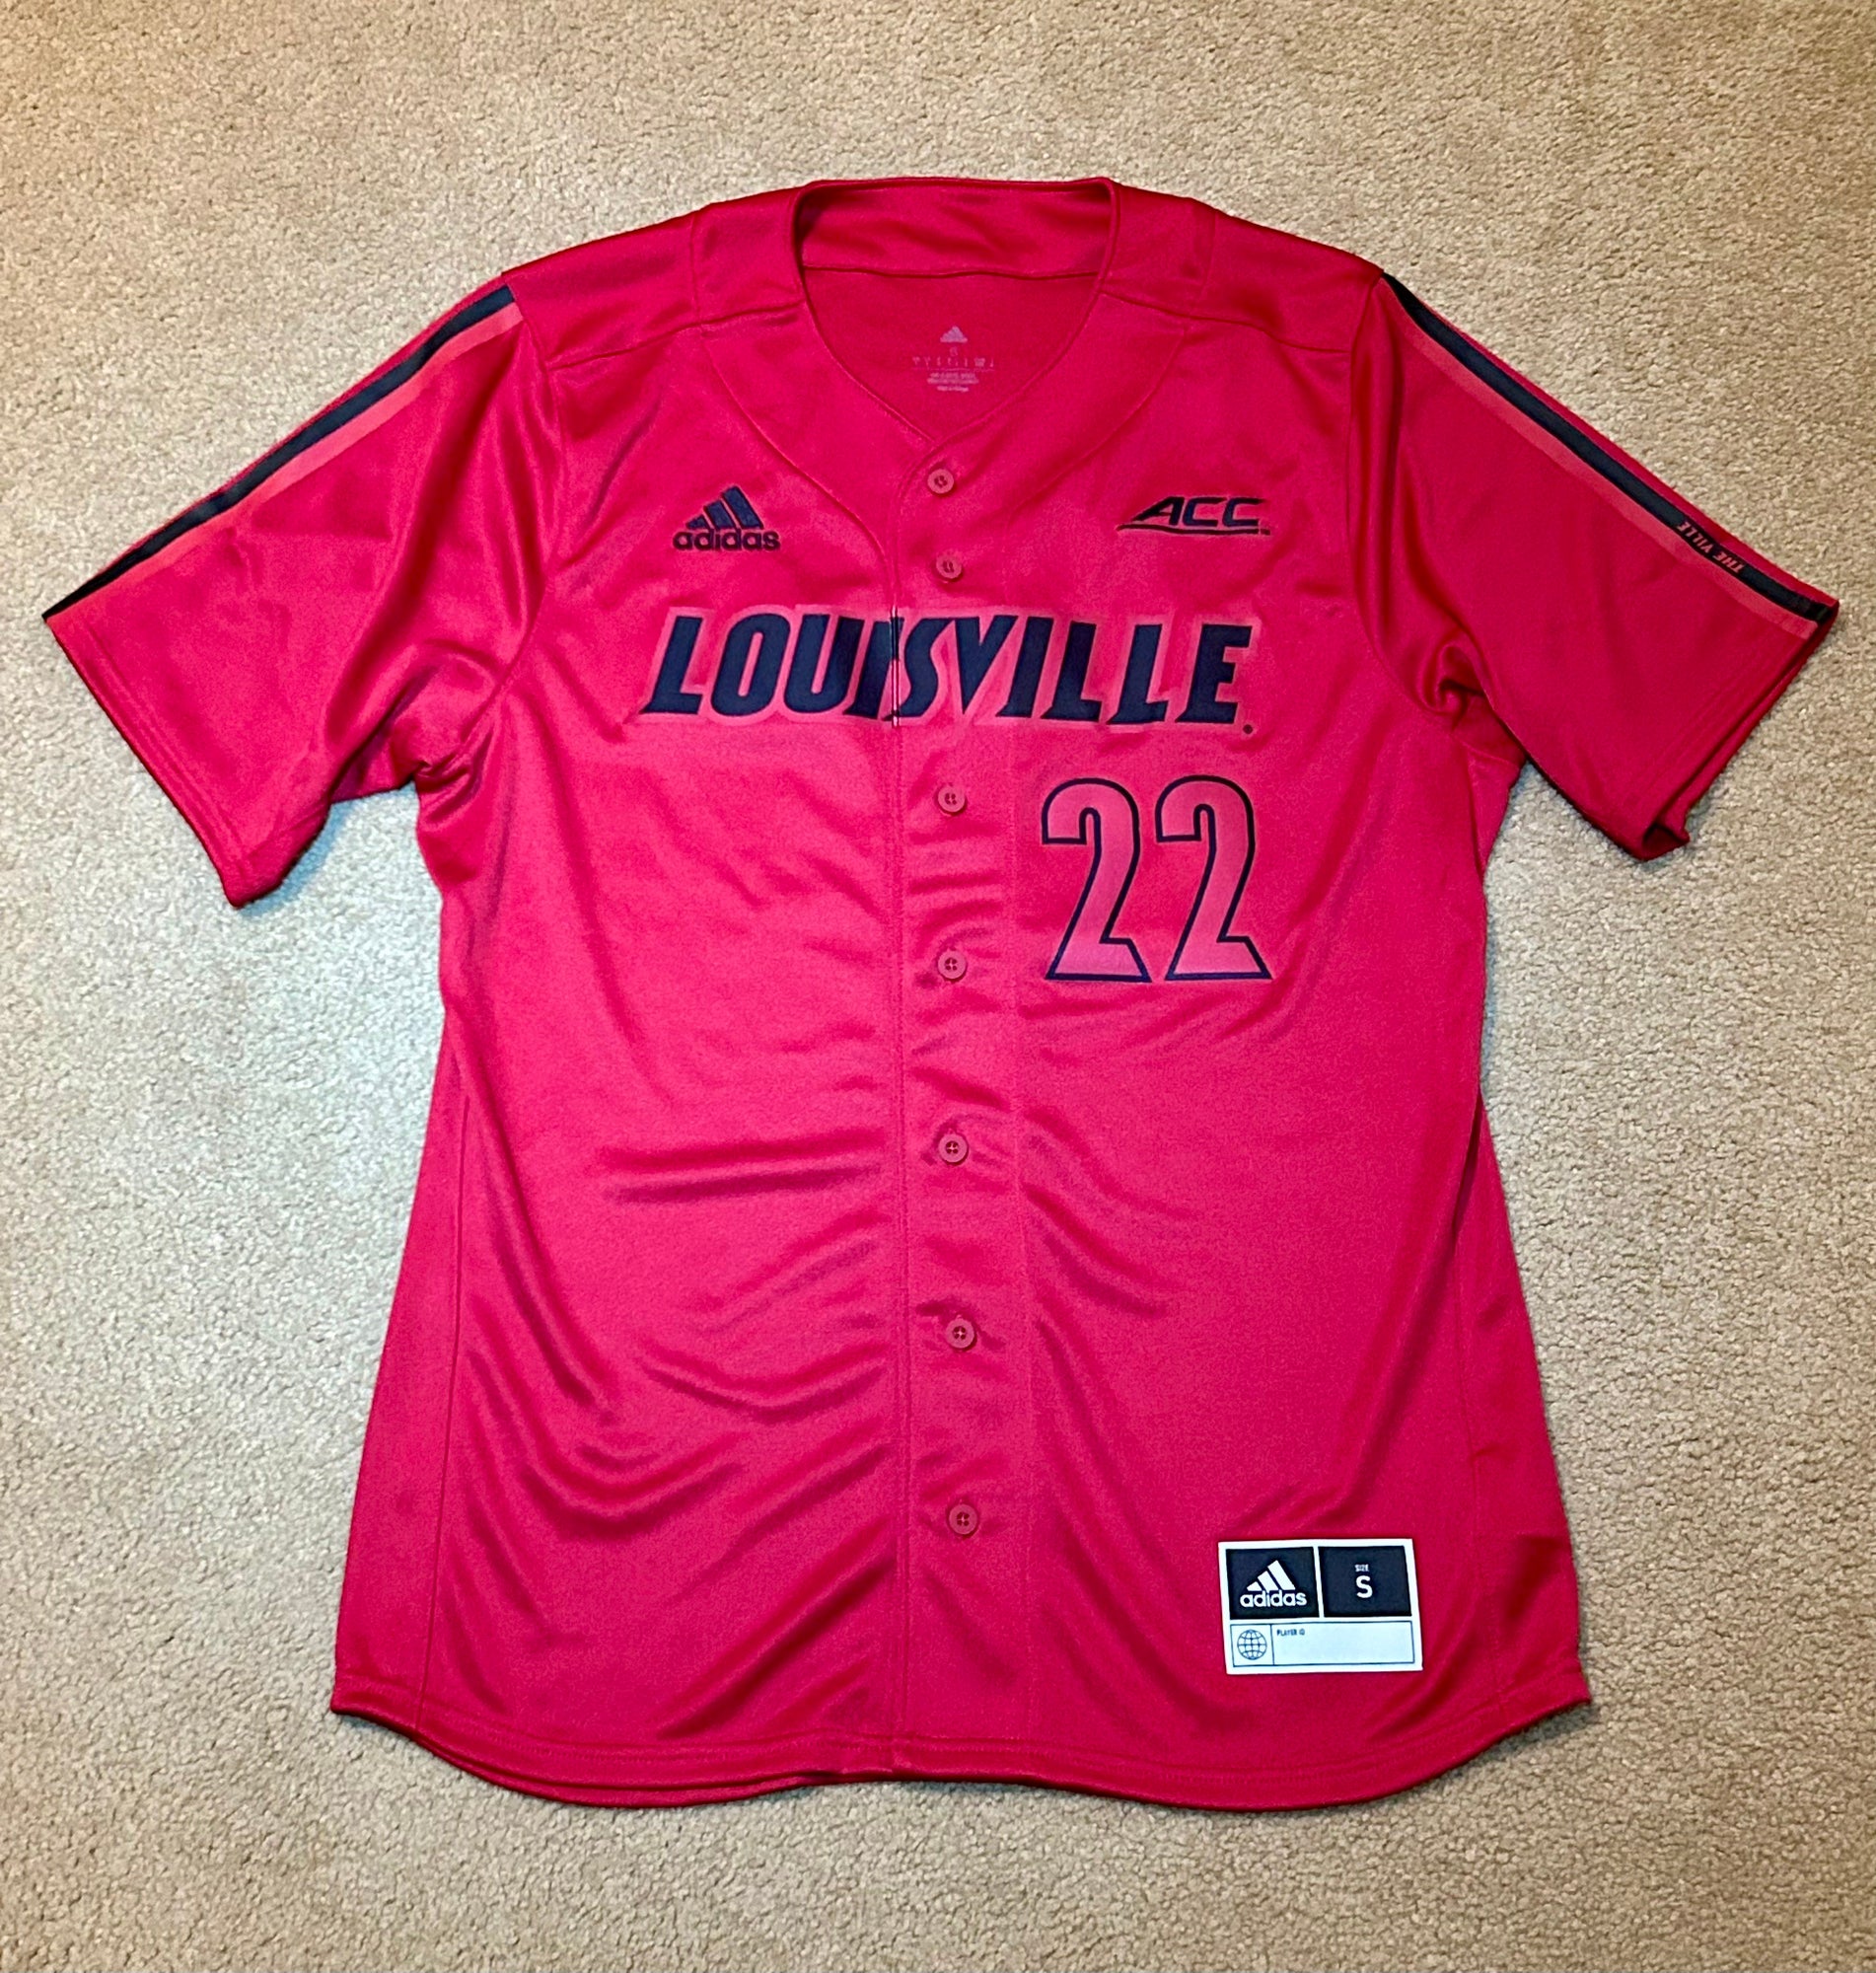 Lids #21 Louisville Cardinals adidas Button-Up Baseball Jersey - Red